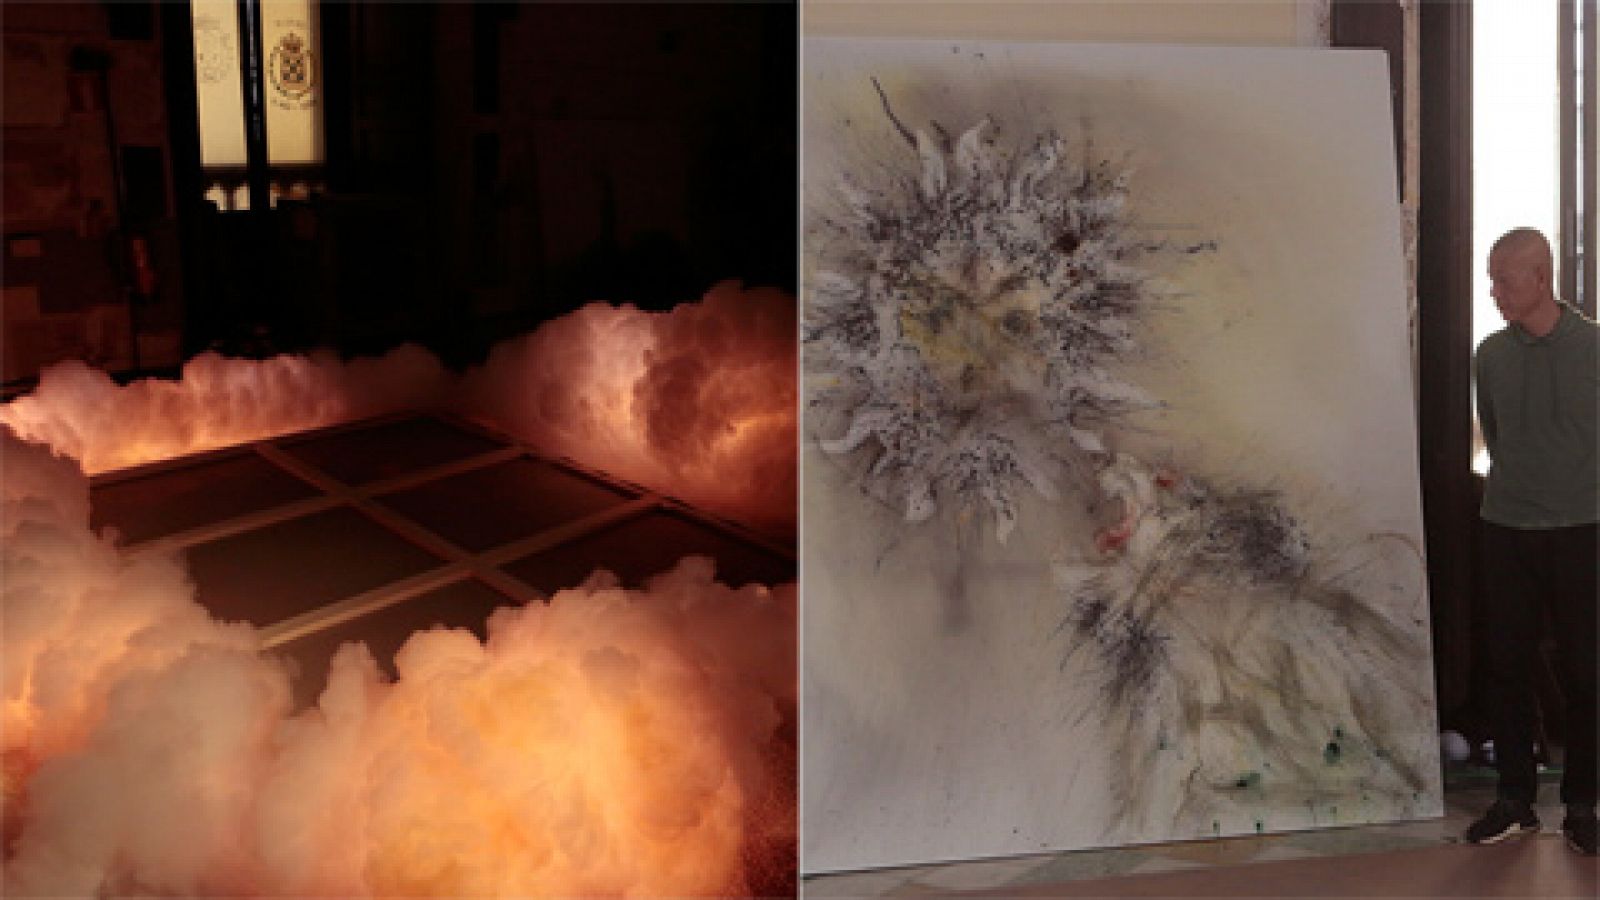 El proceso de trabajo con pólvora del artista chino Cai Guo-Qiang